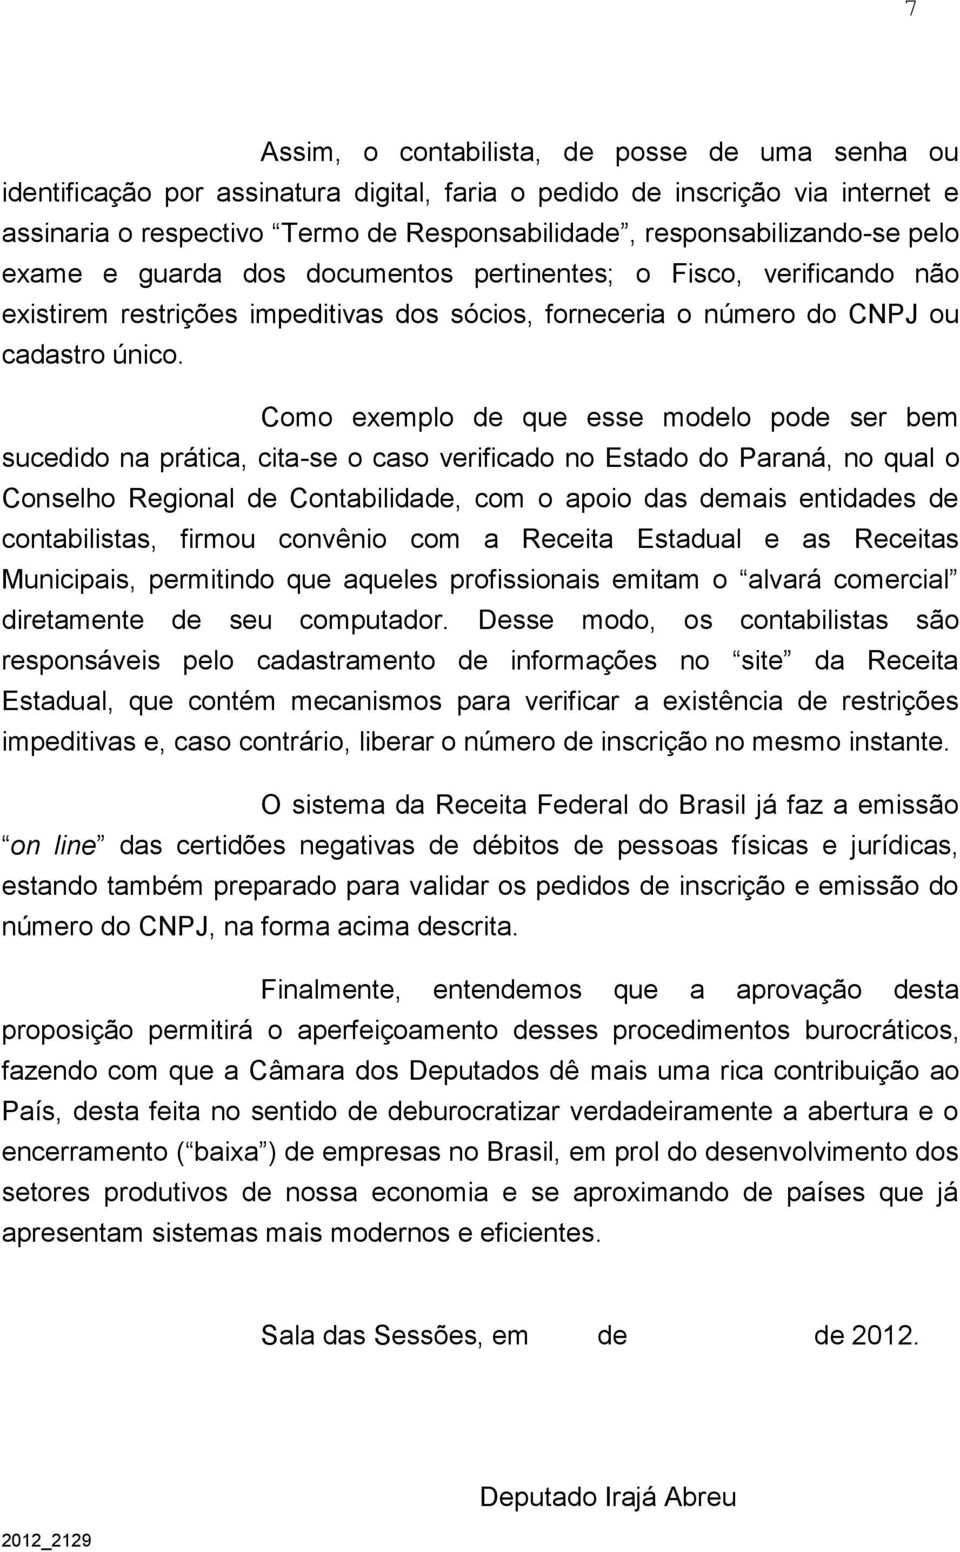 Como exemplo de que esse modelo pode ser bem sucedido na prática, cita-se o caso verificado no Estado do Paraná, no qual o Conselho Regional de Contabilidade, com o apoio das demais entidades de